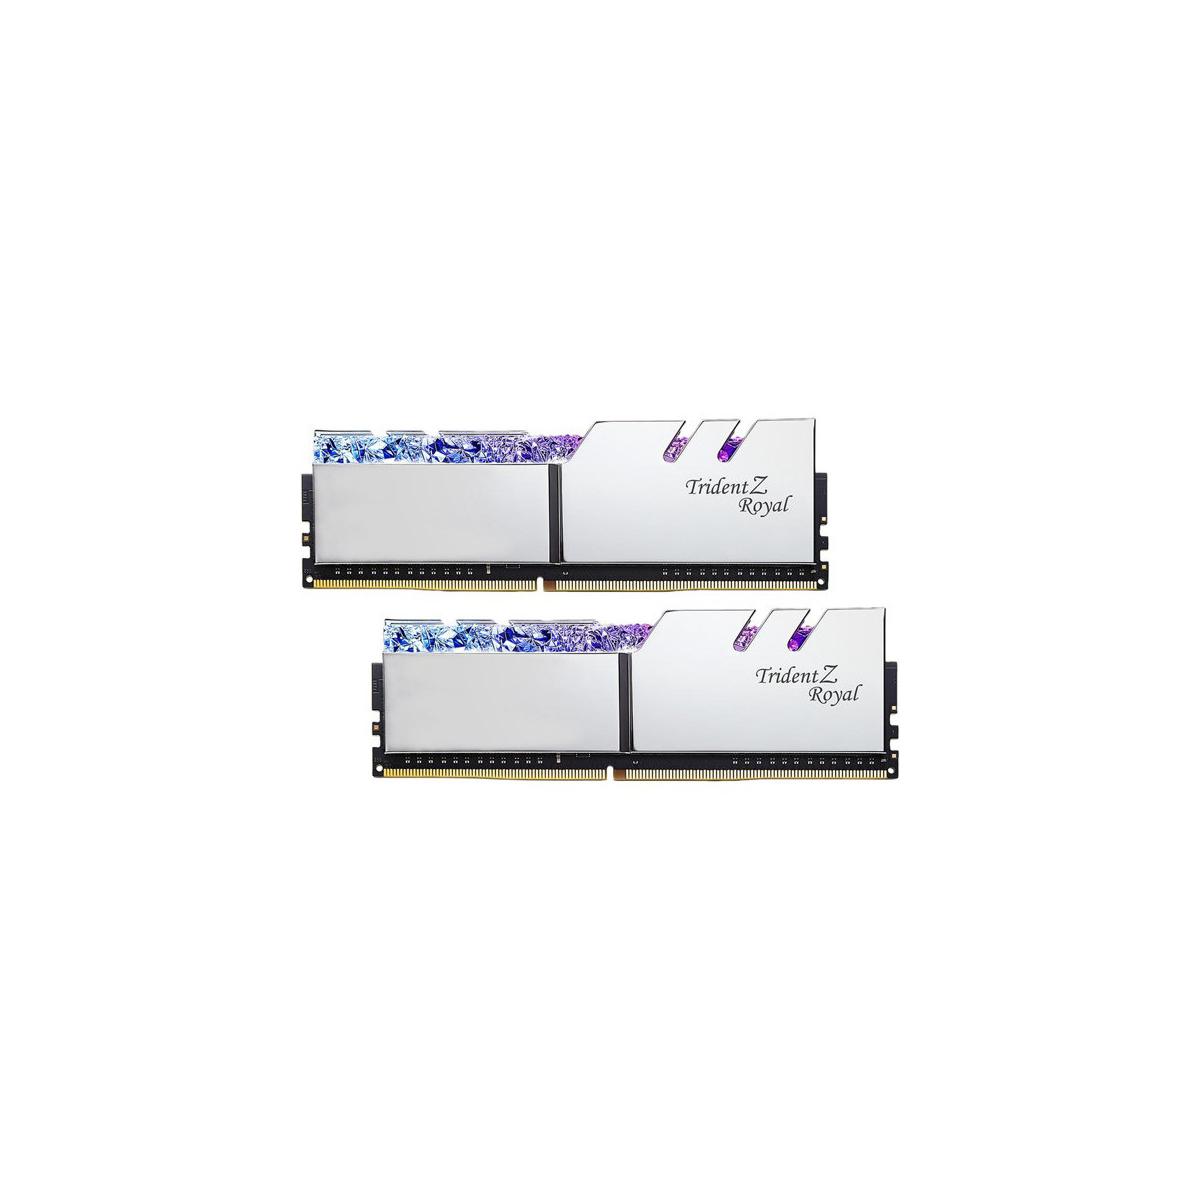 MEMORIA DIMM DDR4 G.SKILL (F4-3200C16D-32GTRS) 32GB (2X16GB) 3200 MHZ, TRIDENT ROYAL SILVER - G.SKILL